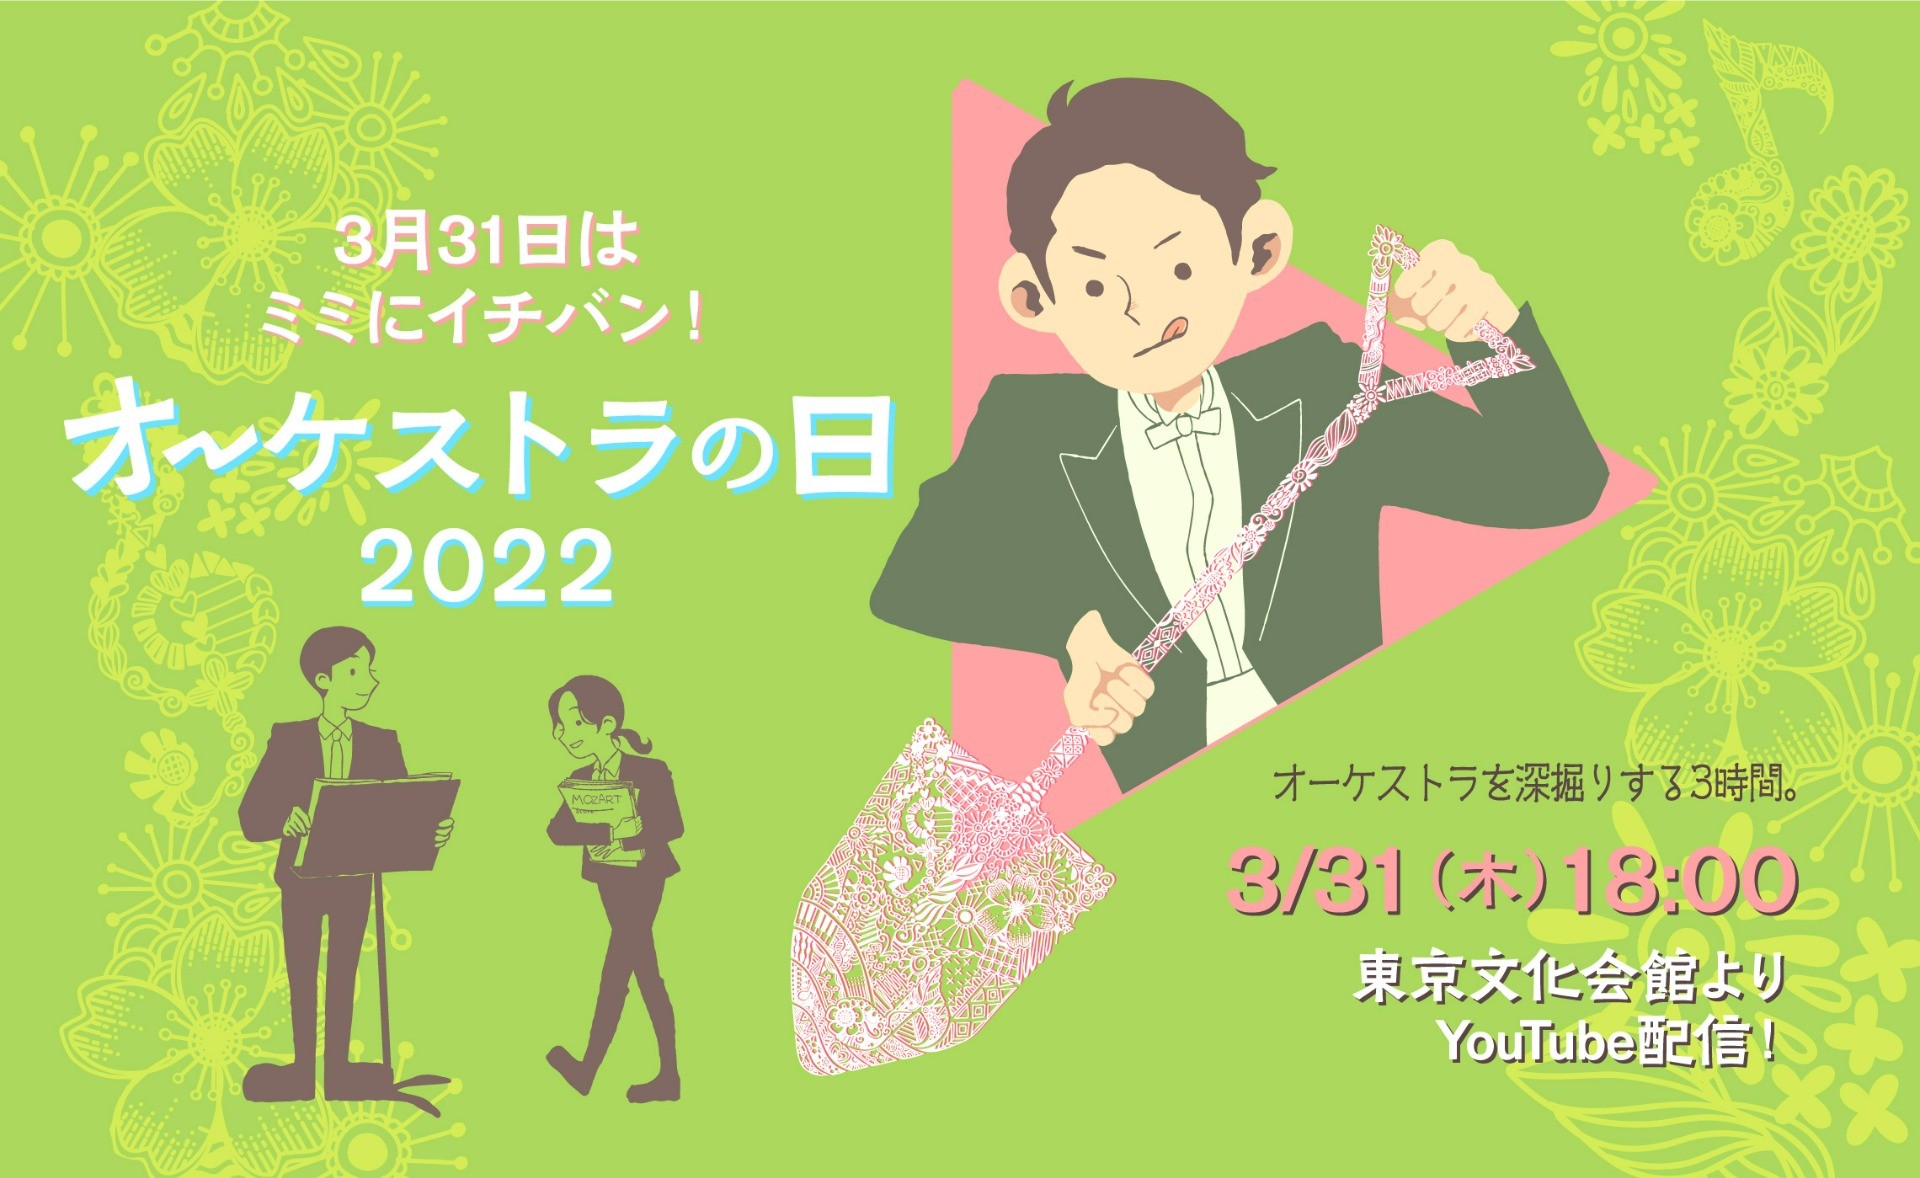 3/31「オーケストラの日2022」配信イベントのお知らせ